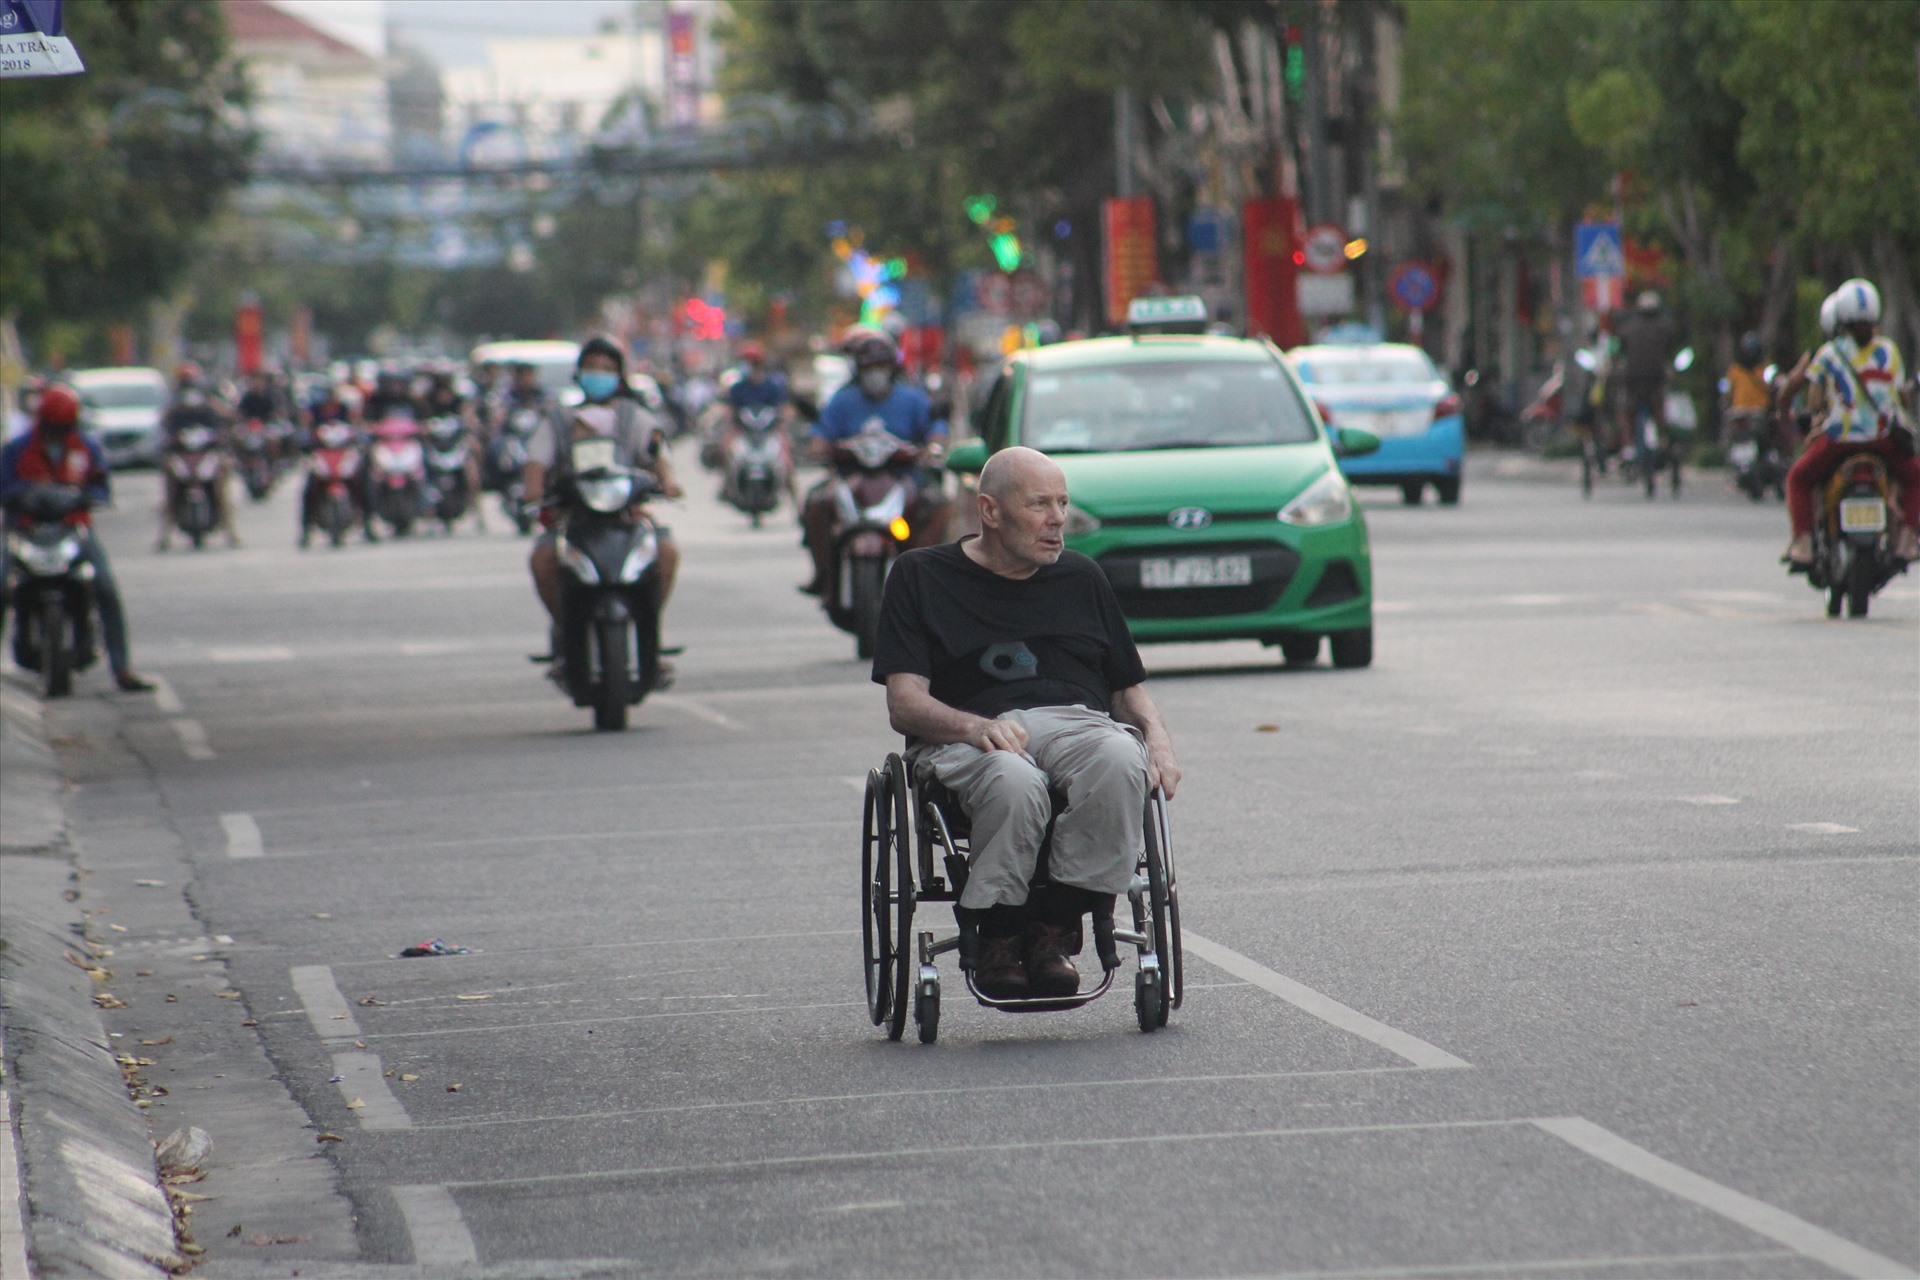 Việc đeo khẩu trang (với cả người Việt lẫn người nước ngoài) vẻ như vẫn còn bị xem nhẹ. Hình ảnh dễ dàng nhận thấy trên các tuyến phố ở Nha Trang, Khánh Hòa.